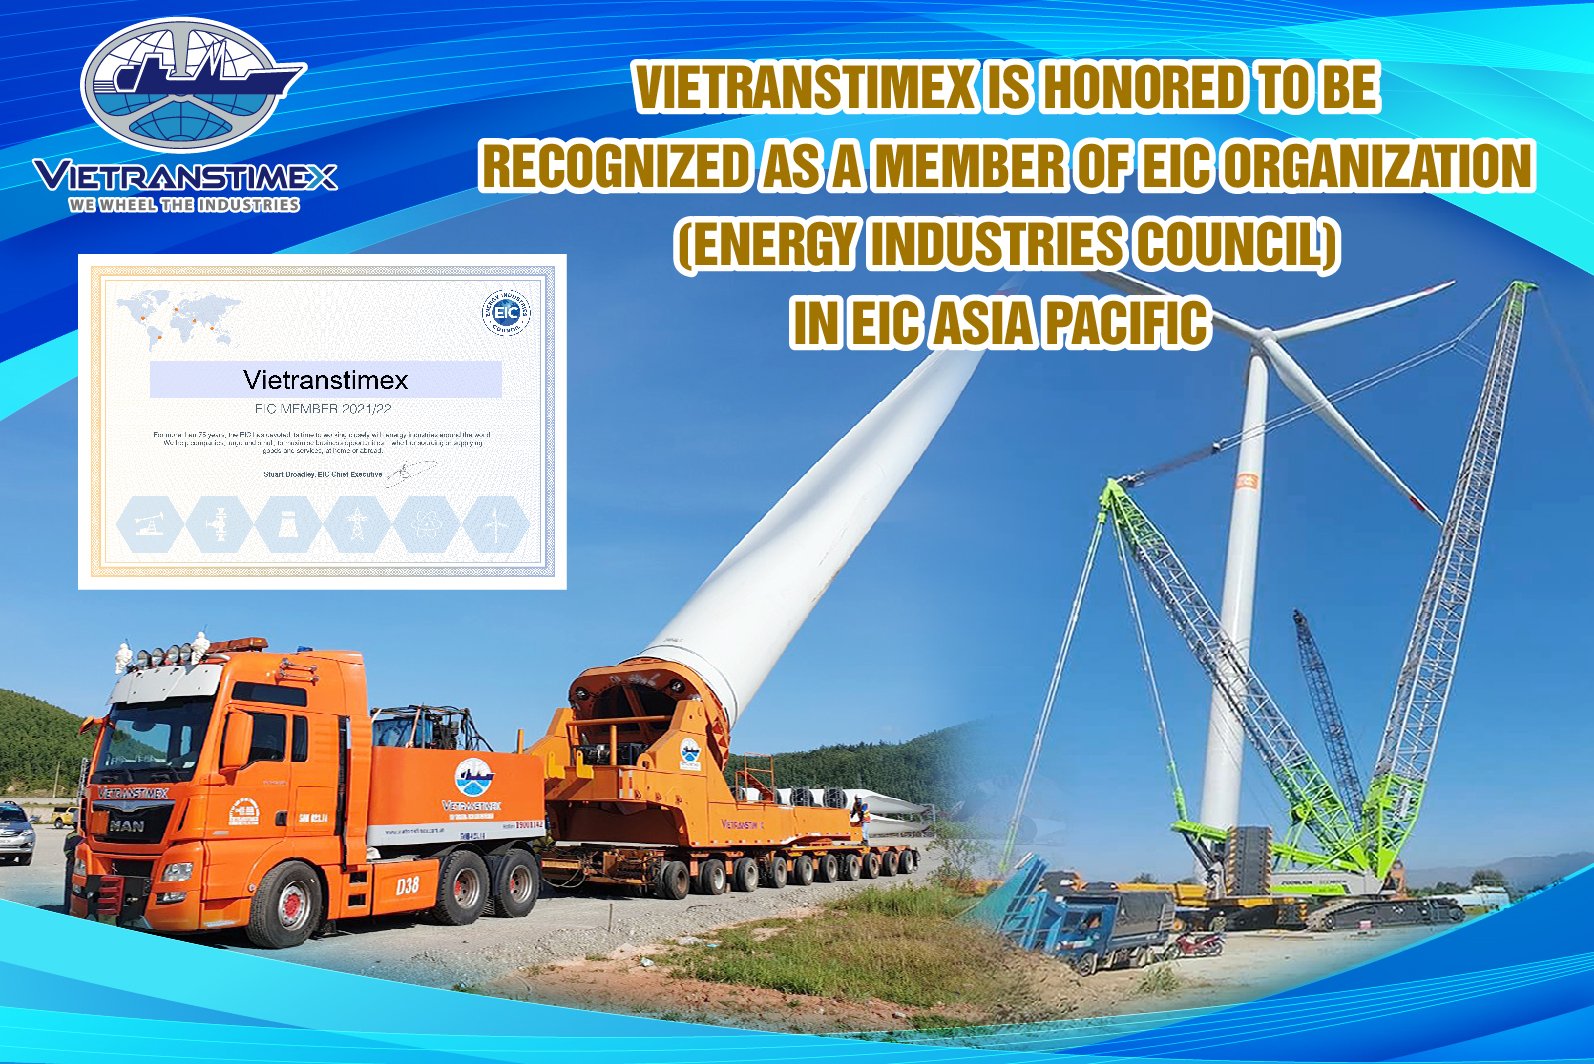 Vietranstimex Vinh Dự Được Công Nhận Là Thành Viên Của Tổ Chức EIC (Energy Industries Council) Tại Khu Vực Châu Á Thái Bình Dương